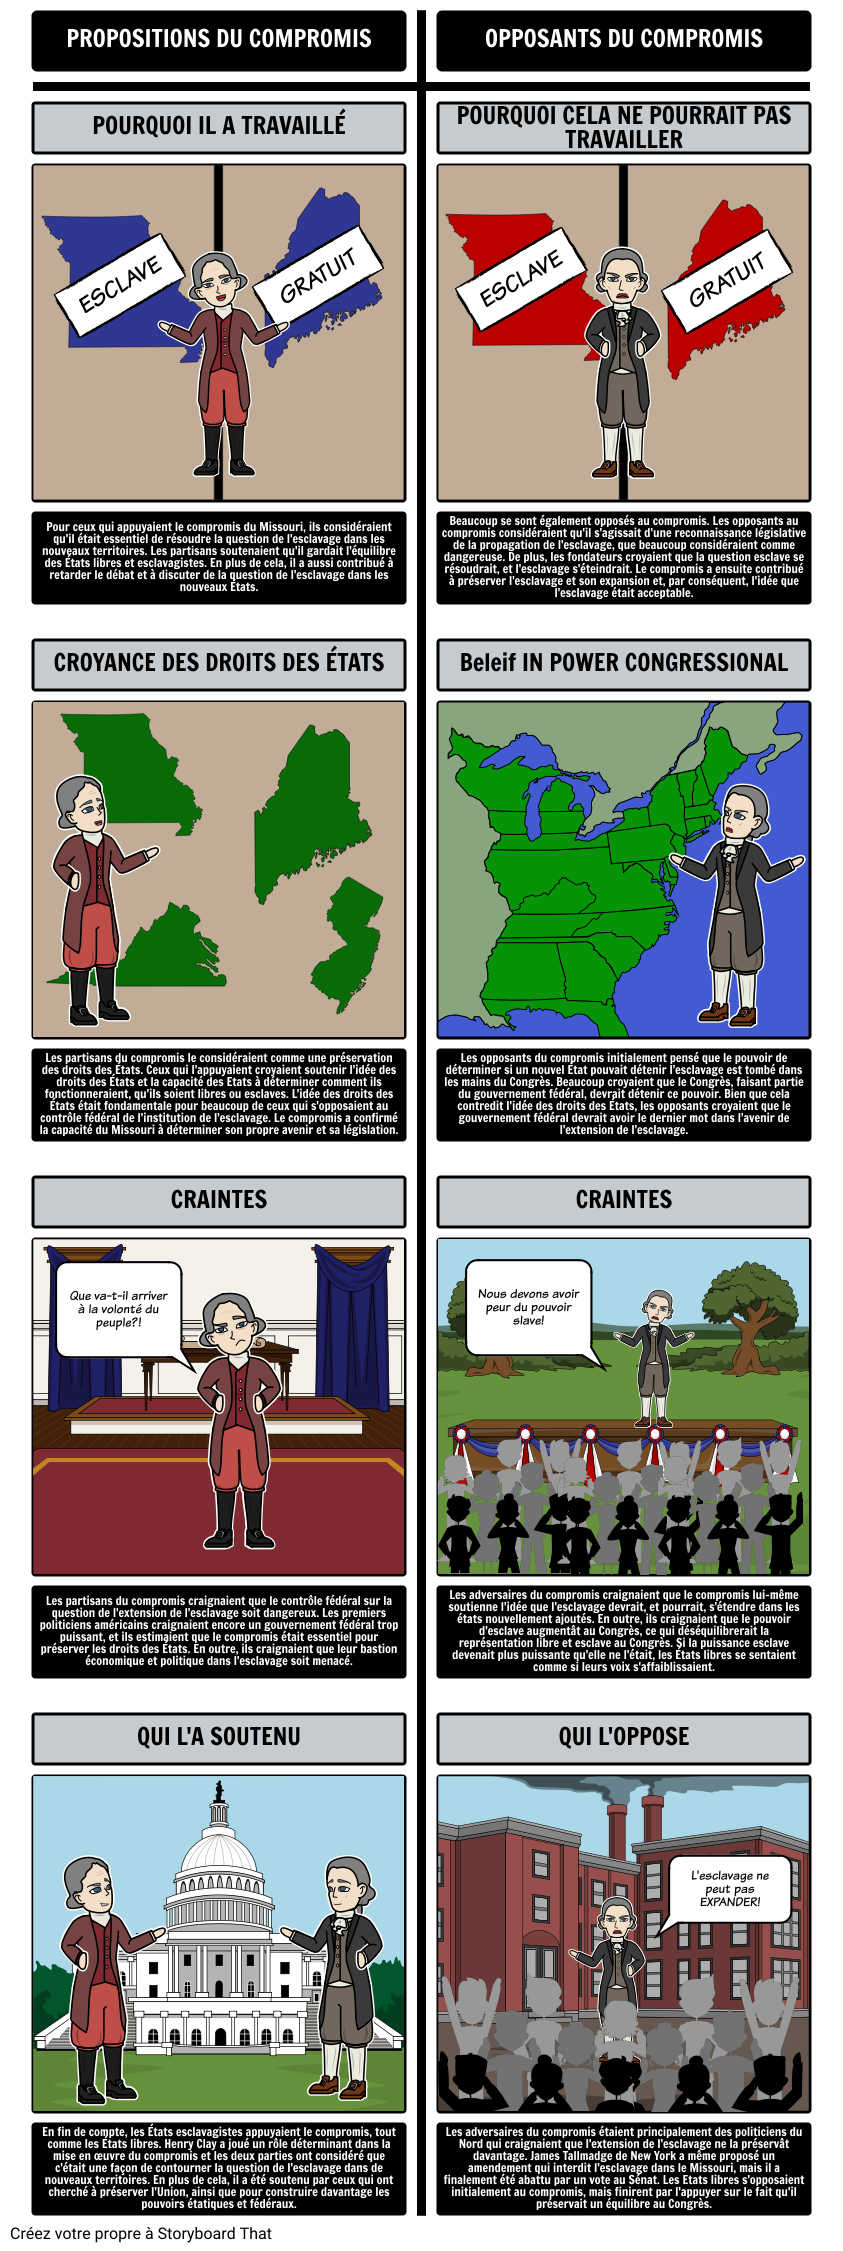 Le compromis du Missouri de 1820 - partisans et opposants